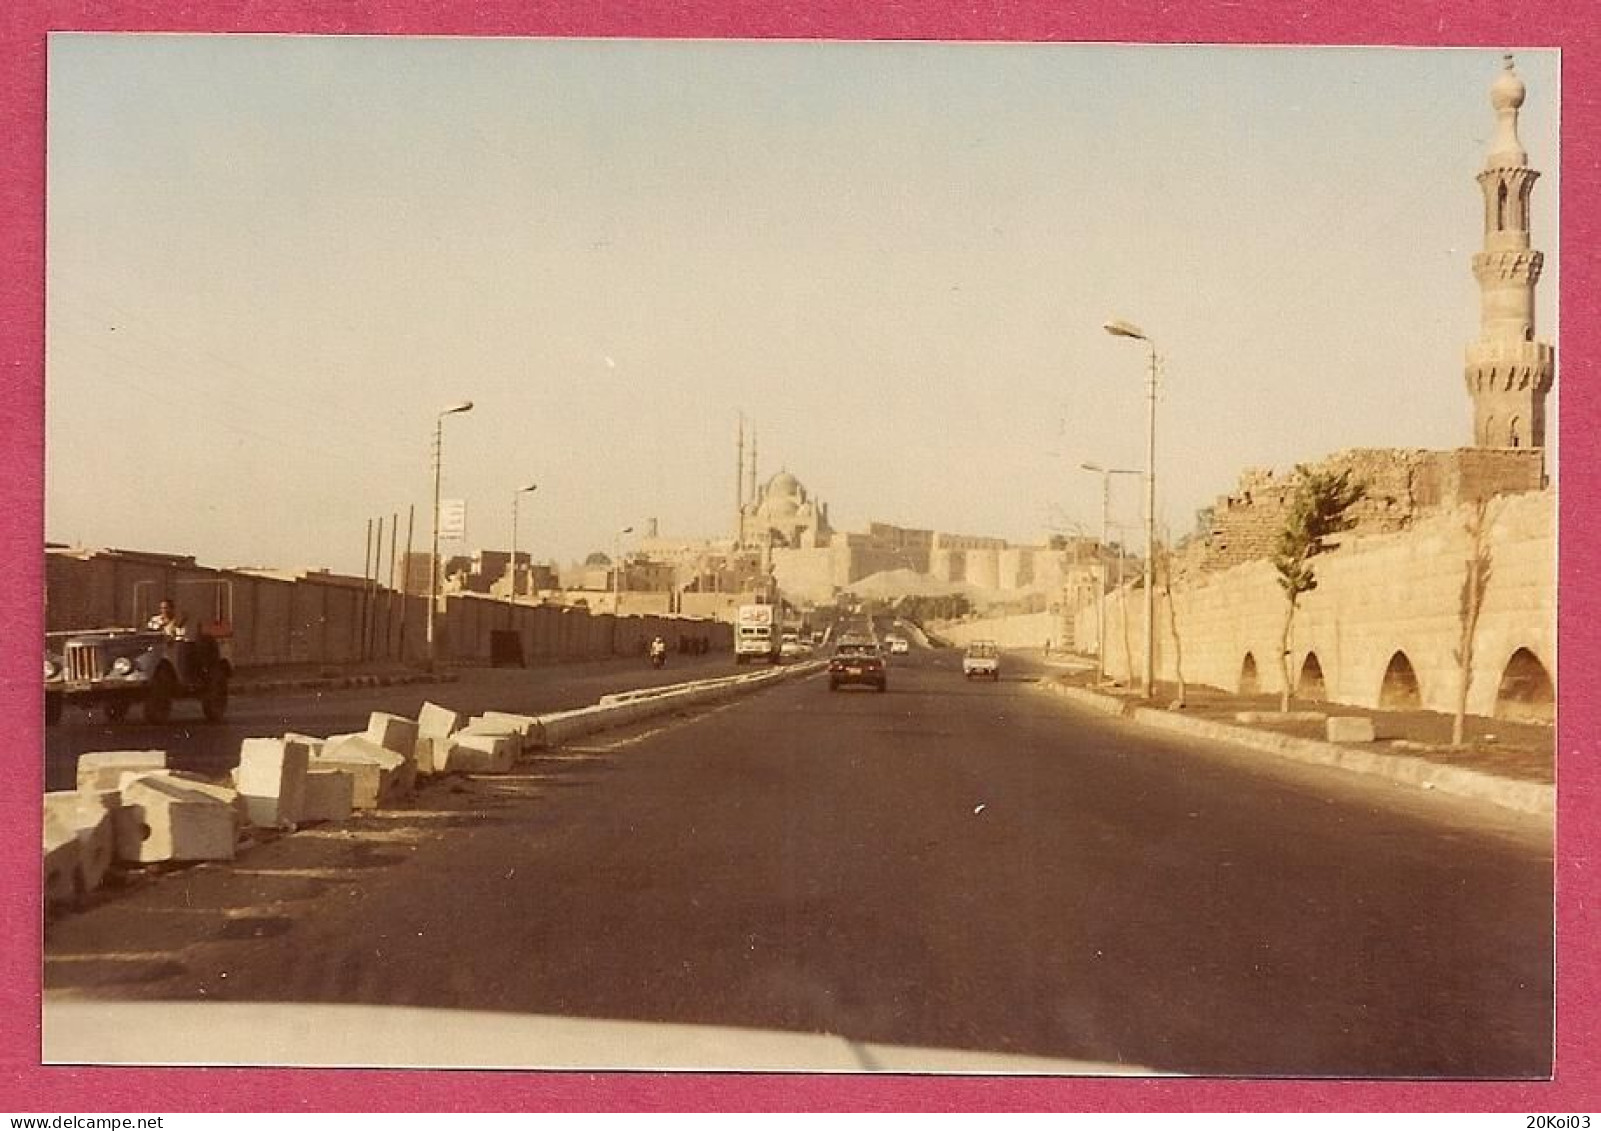 Egypte Egypt 1981 La Citadelle Du Caire  Mosquée Mohammed Ali_Mosque Citadel Cairo_Photograph +/-Kodak_Not Postcard_TTB - Le Caire